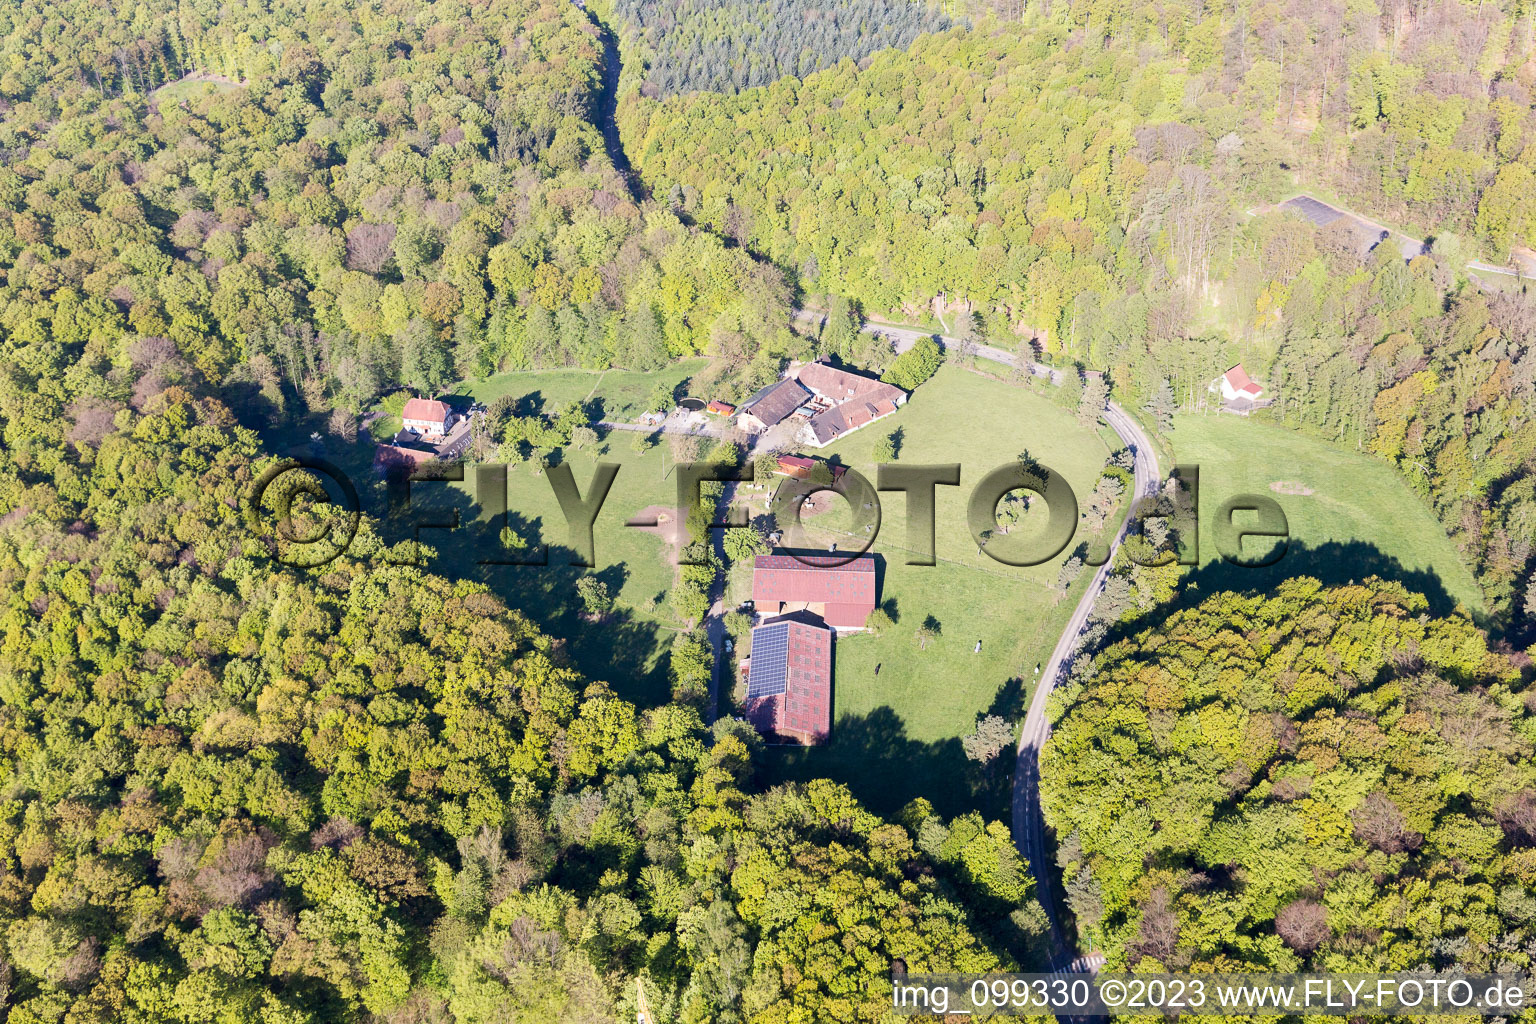 Drachenbronn-Birlenbach im Bundesland Bas-Rhin, Frankreich von einer Drohne aus